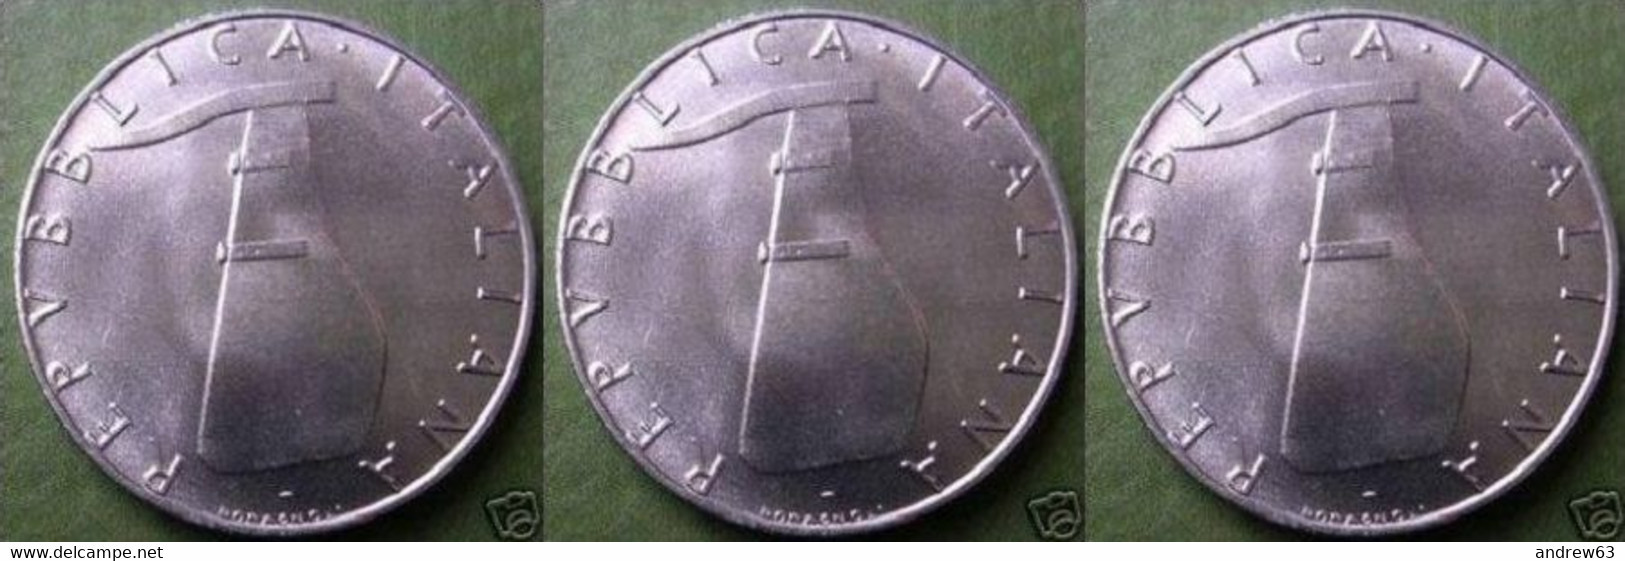 ITALIA - Lire 5 1976 - FDC/Unc Da Rotolino/from Roll 3 Monete/3 Coins - 5 Liras